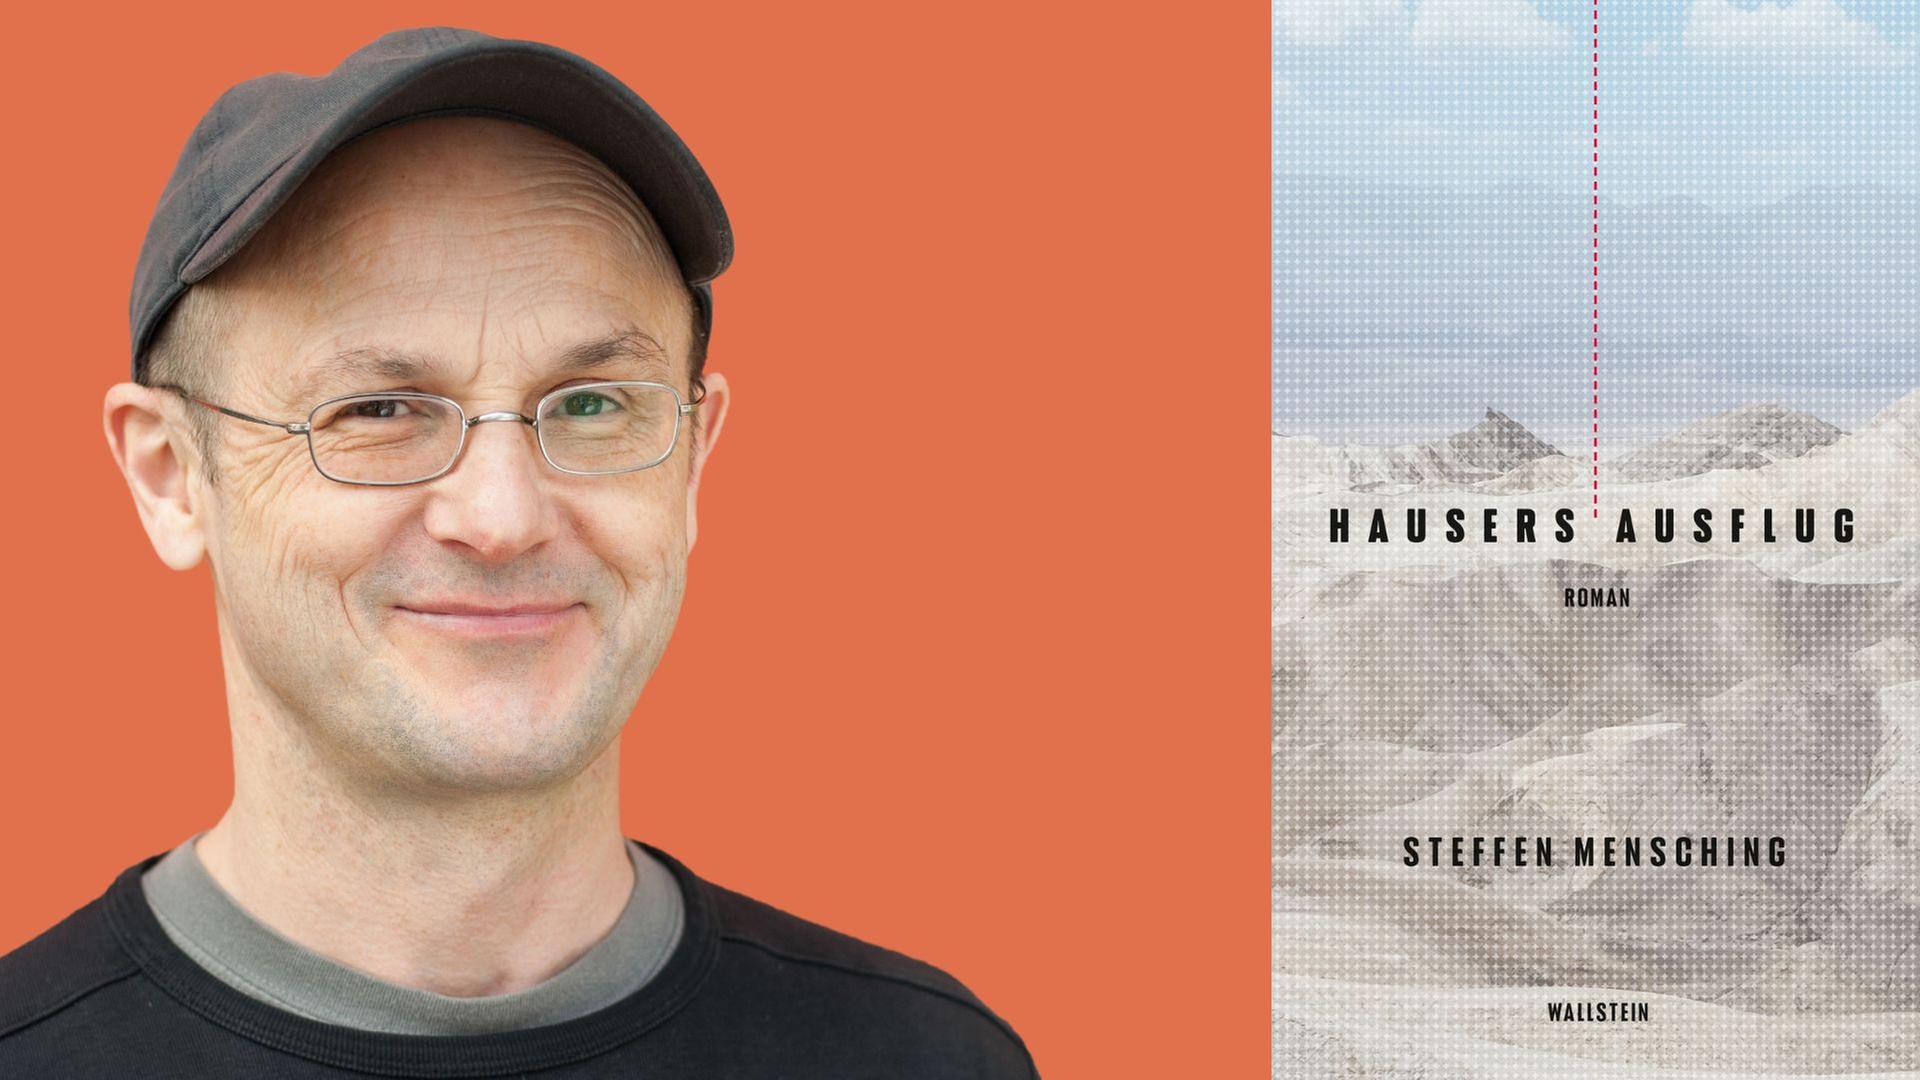 Steffen Mensching: "Hausers Ausflug"

Zu sehen sind das Buchcover und der Autor